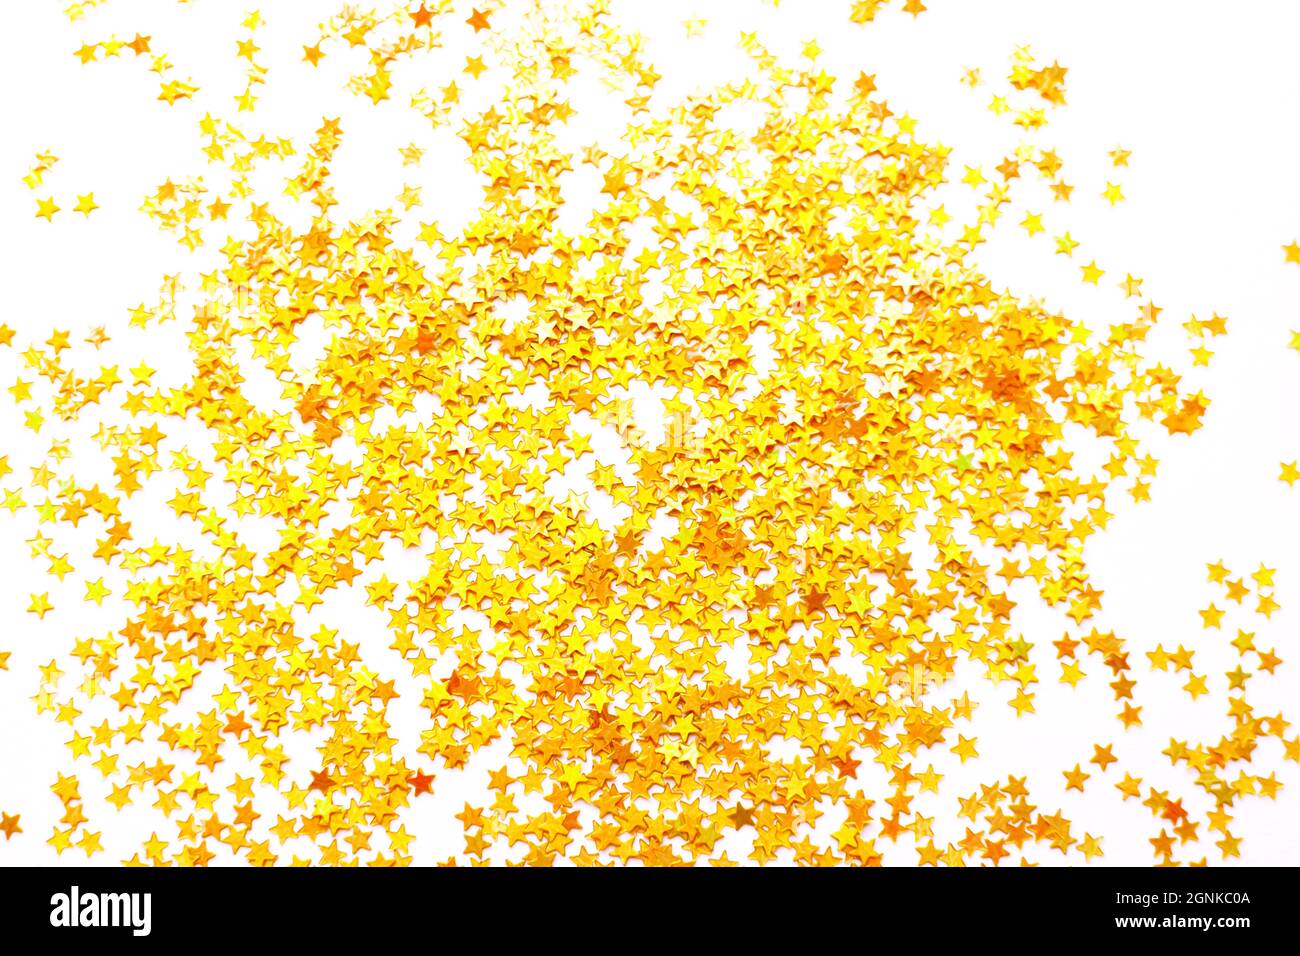 Hintergrund von glänzenden goldenen kleinen Sternen, weihnachtskonzept. Glitzerstruktur. Stockfoto